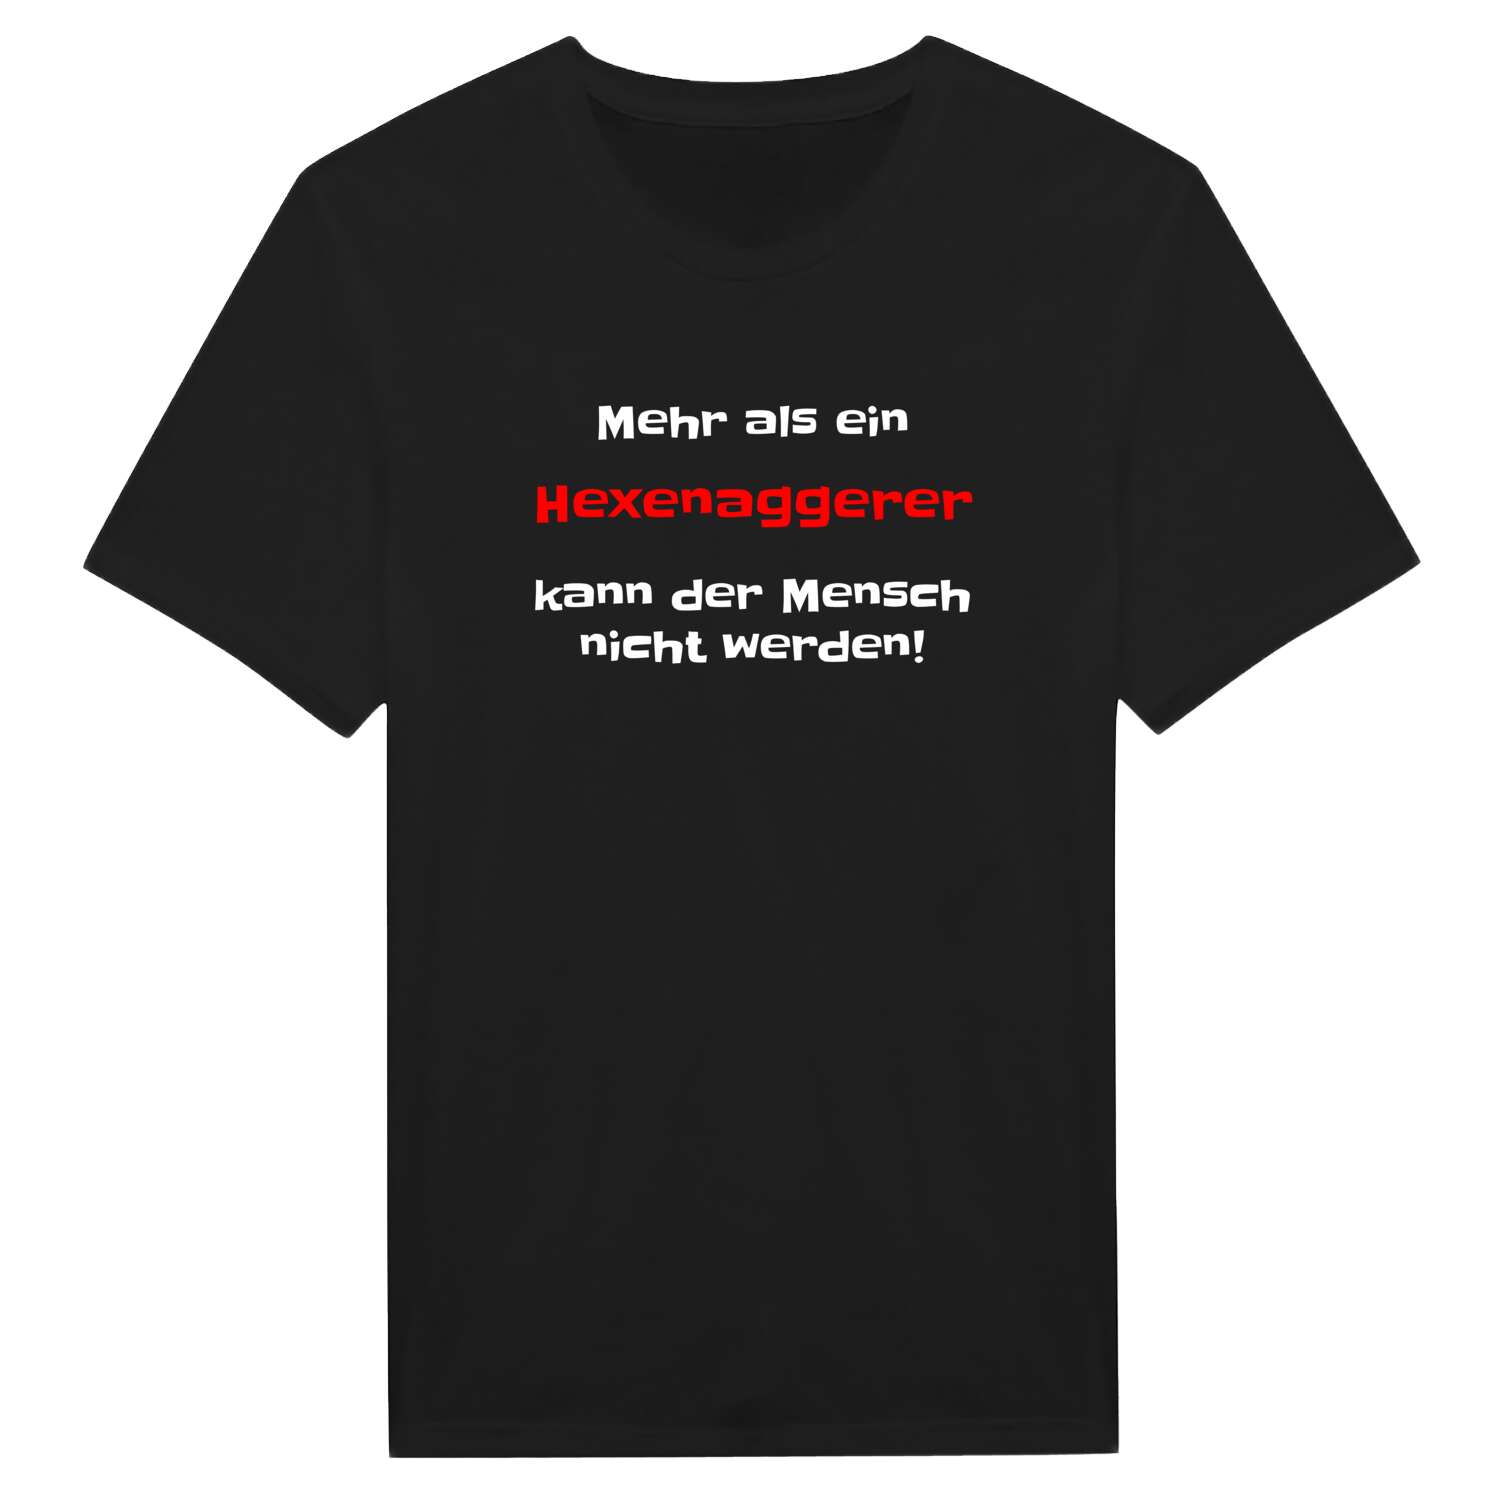 Hexenagger T-Shirt »Mehr als ein«